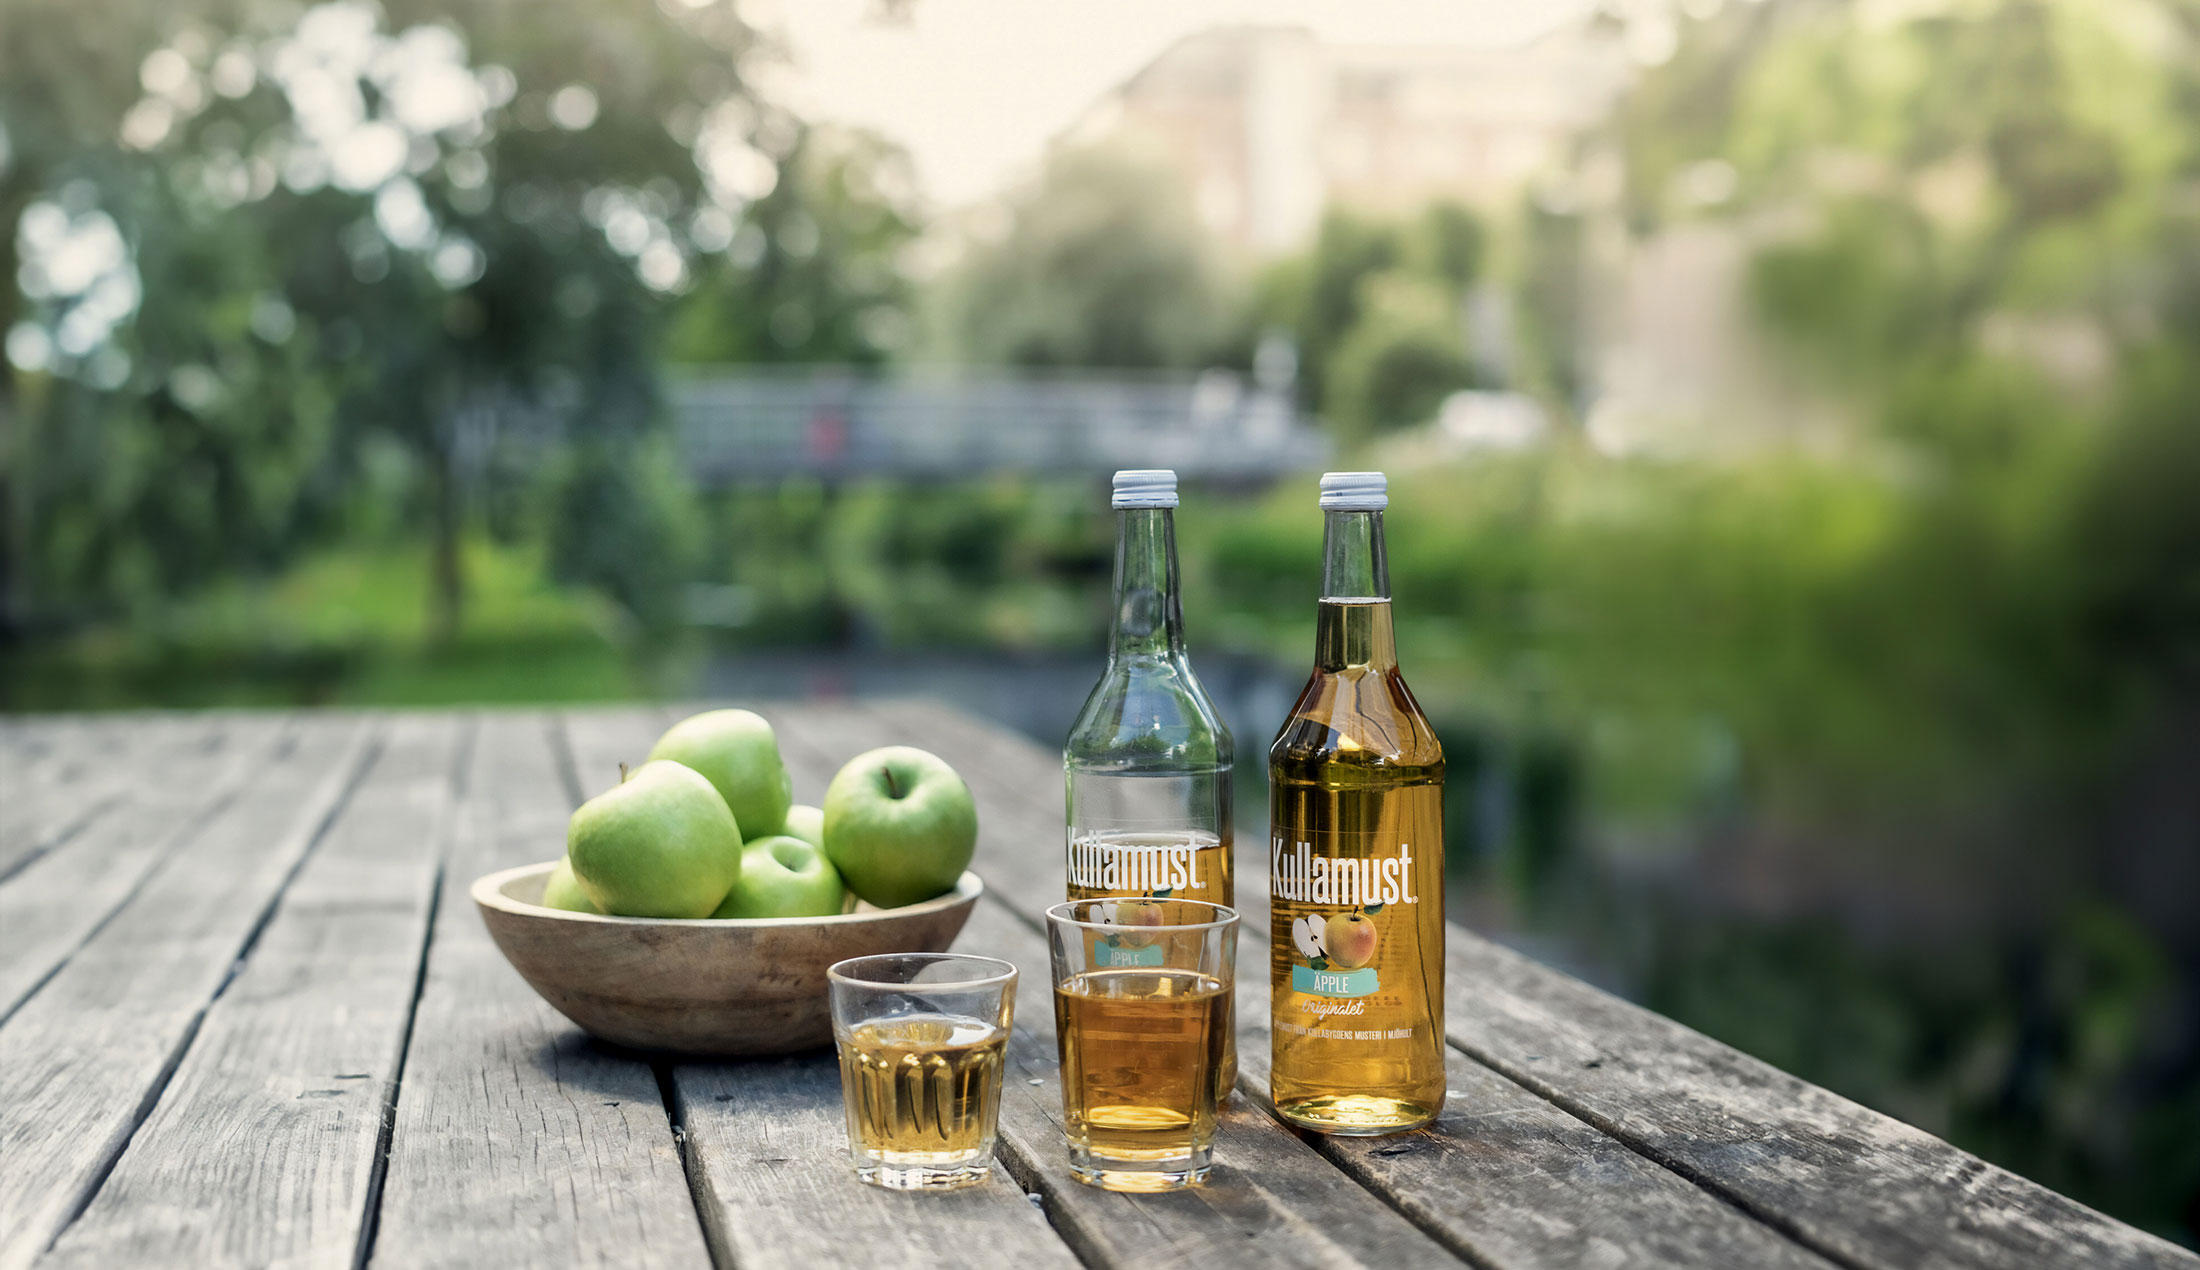 Två glas med äppelmust står på ett bord framför en skål med äpplen och två flaskor kullamust.